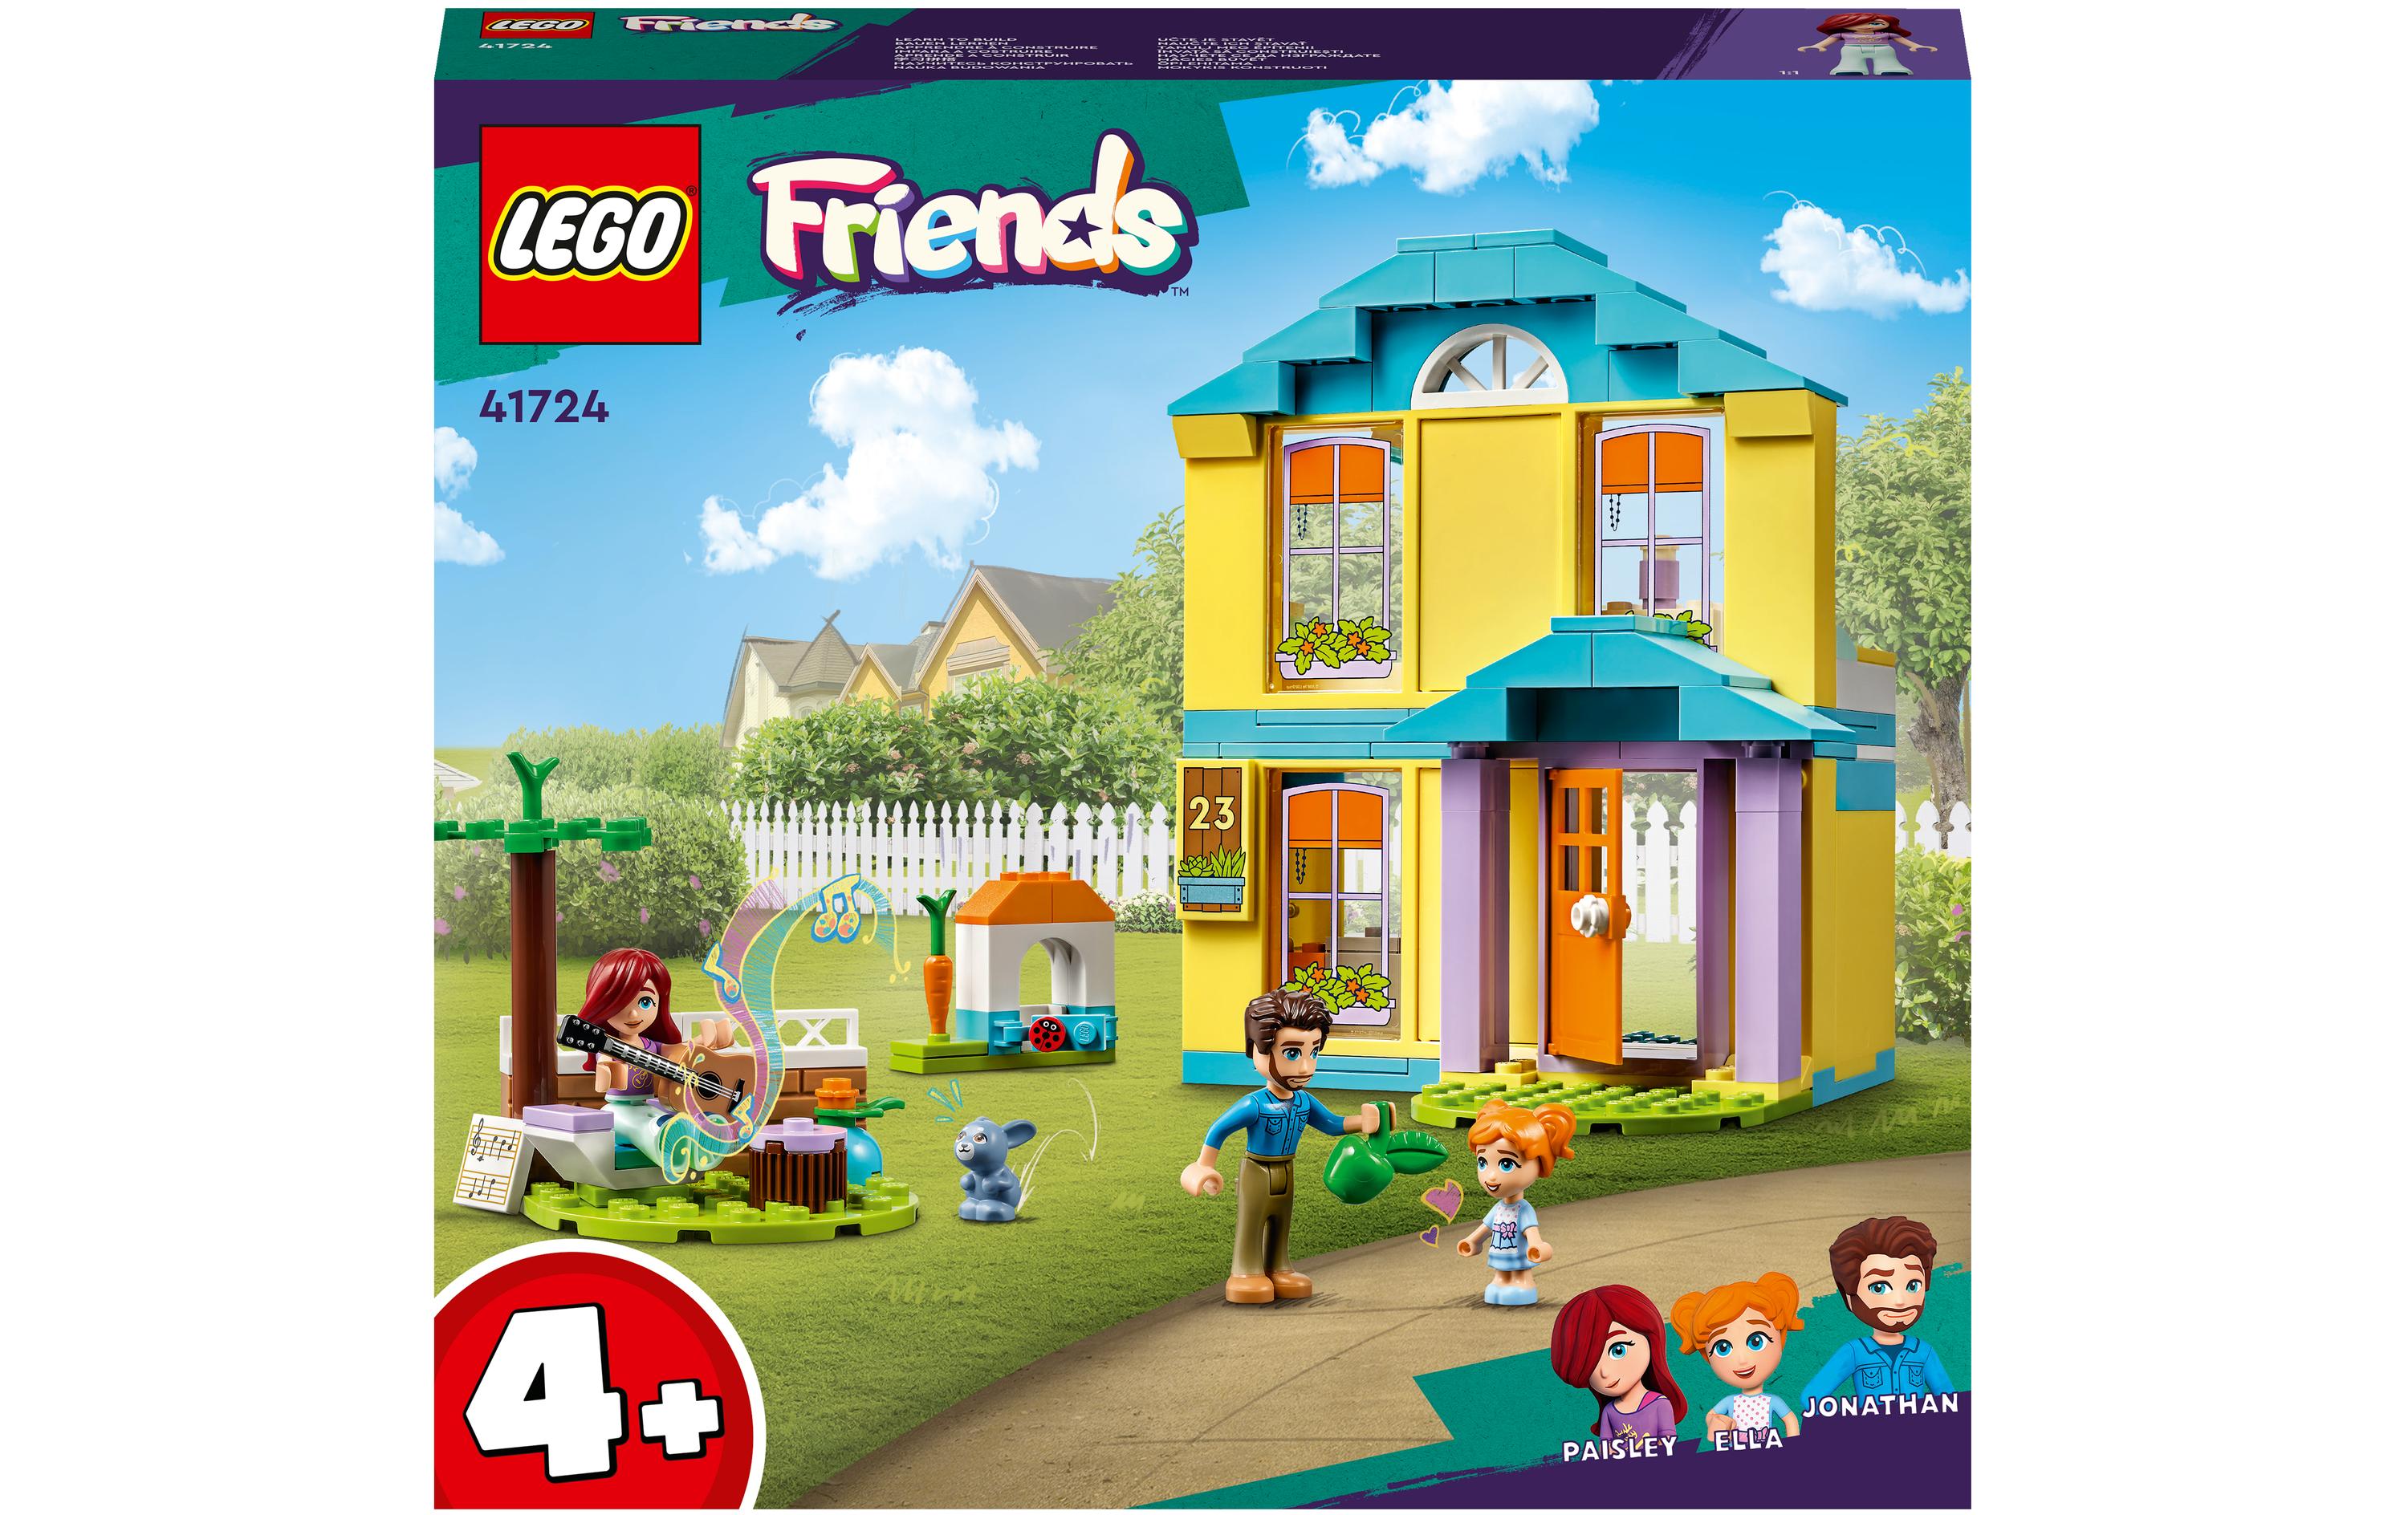 LEGO® Friends Paisleys Haus 41724 - im GOLDSTIEN.SHOP verfügbar mit Gratisversand ab Schweizer Lager! (5702017412832)